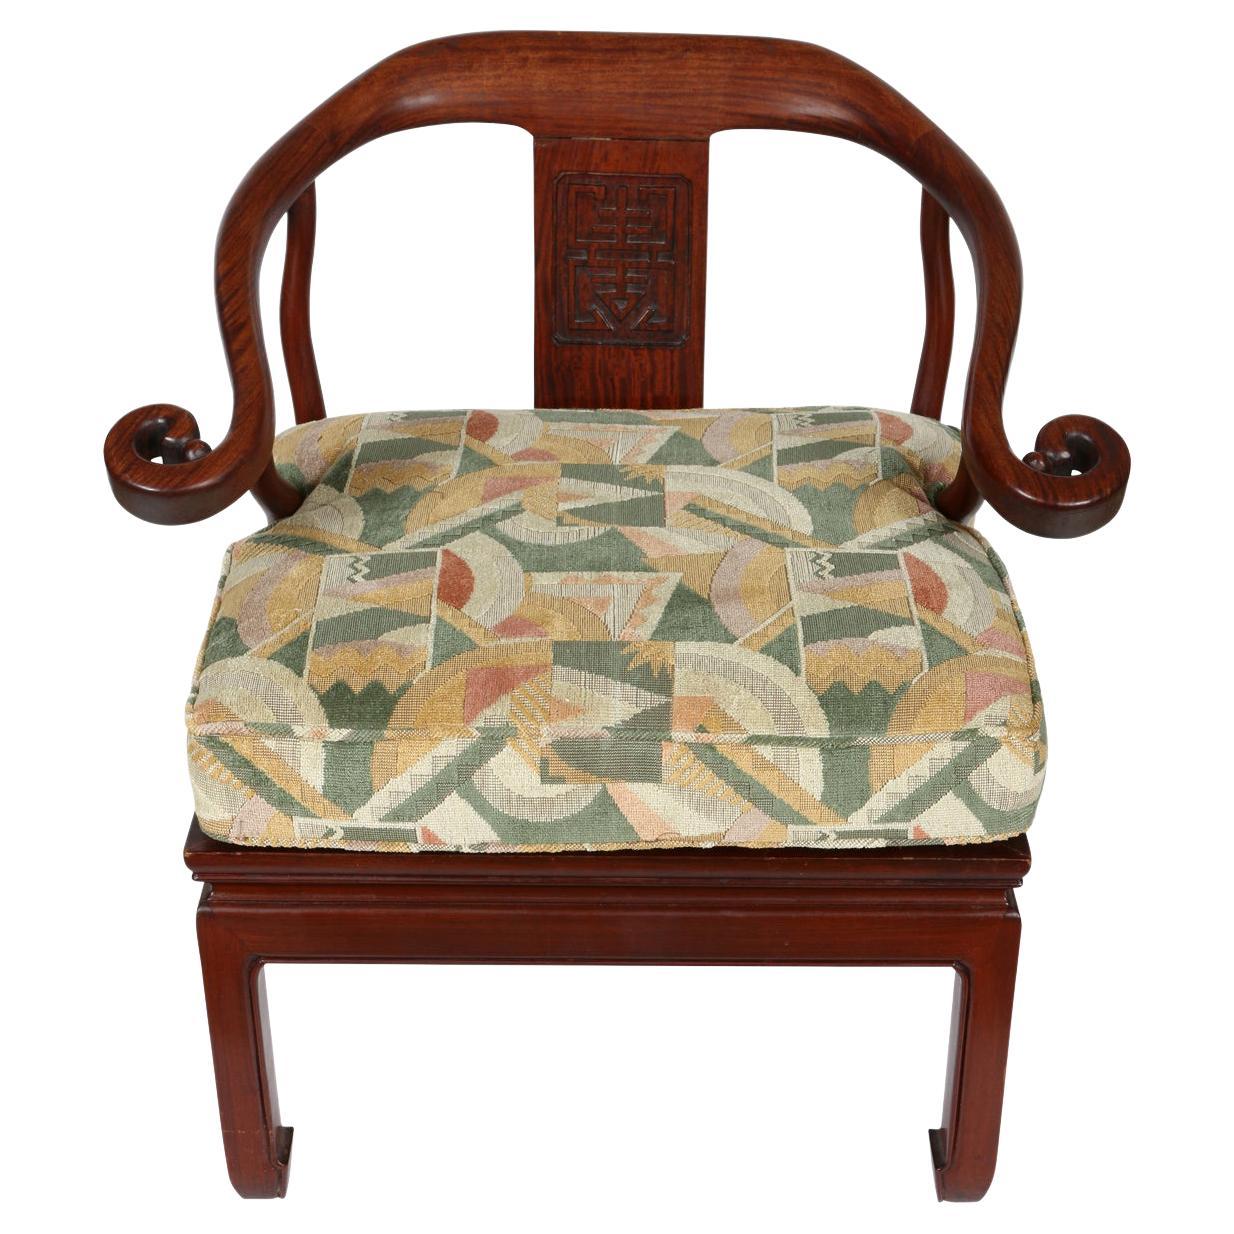 Presque une paire de chaises chinoises en bois de rose et fer à cheval